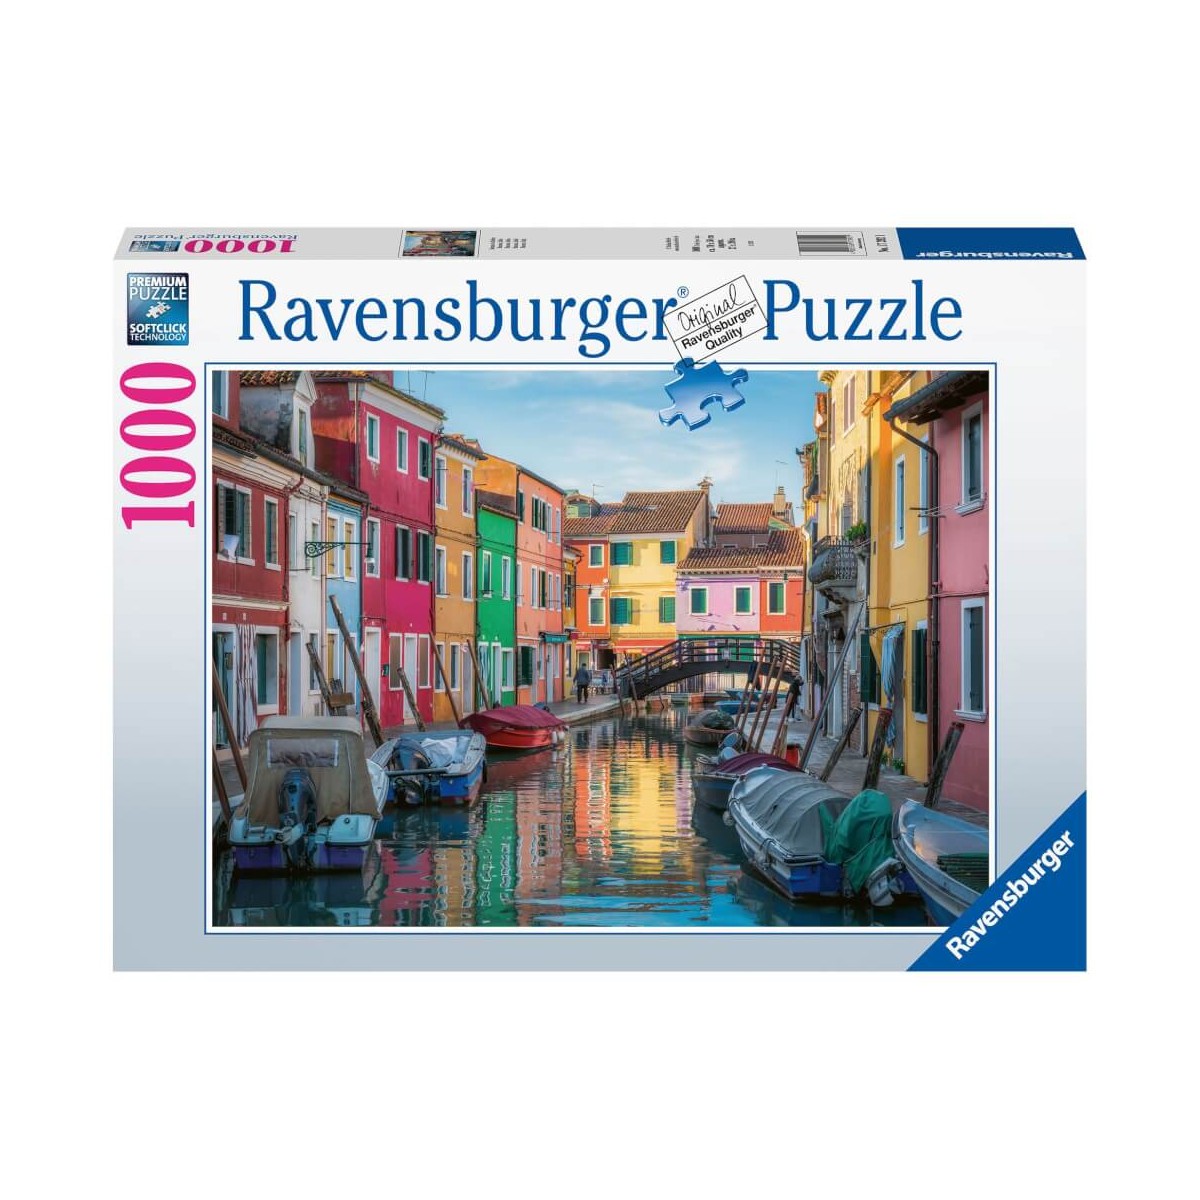 Ravensburger Puzzle 17392 Burano in Italien   1000 Teile Puzzle für Erwachsene und Kinder ab 14 Jahr